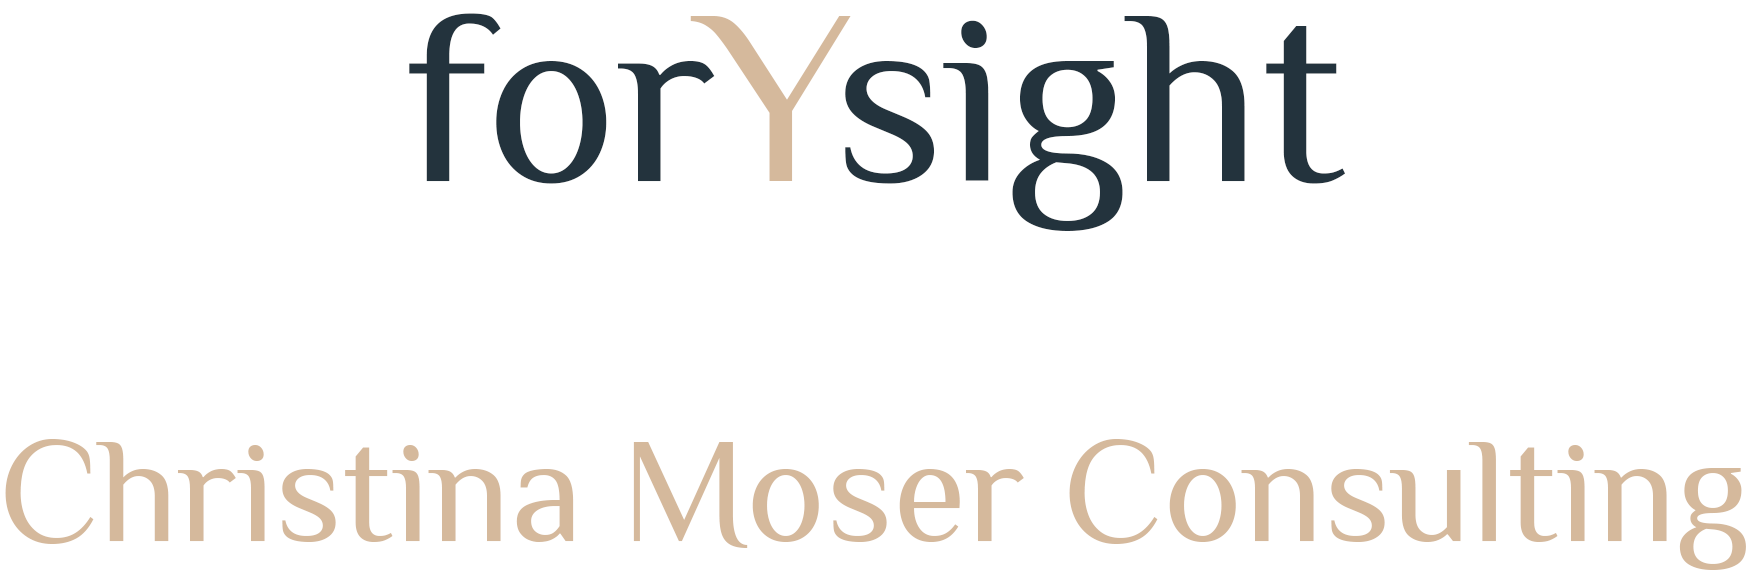 Christina Moser Consulting Logo